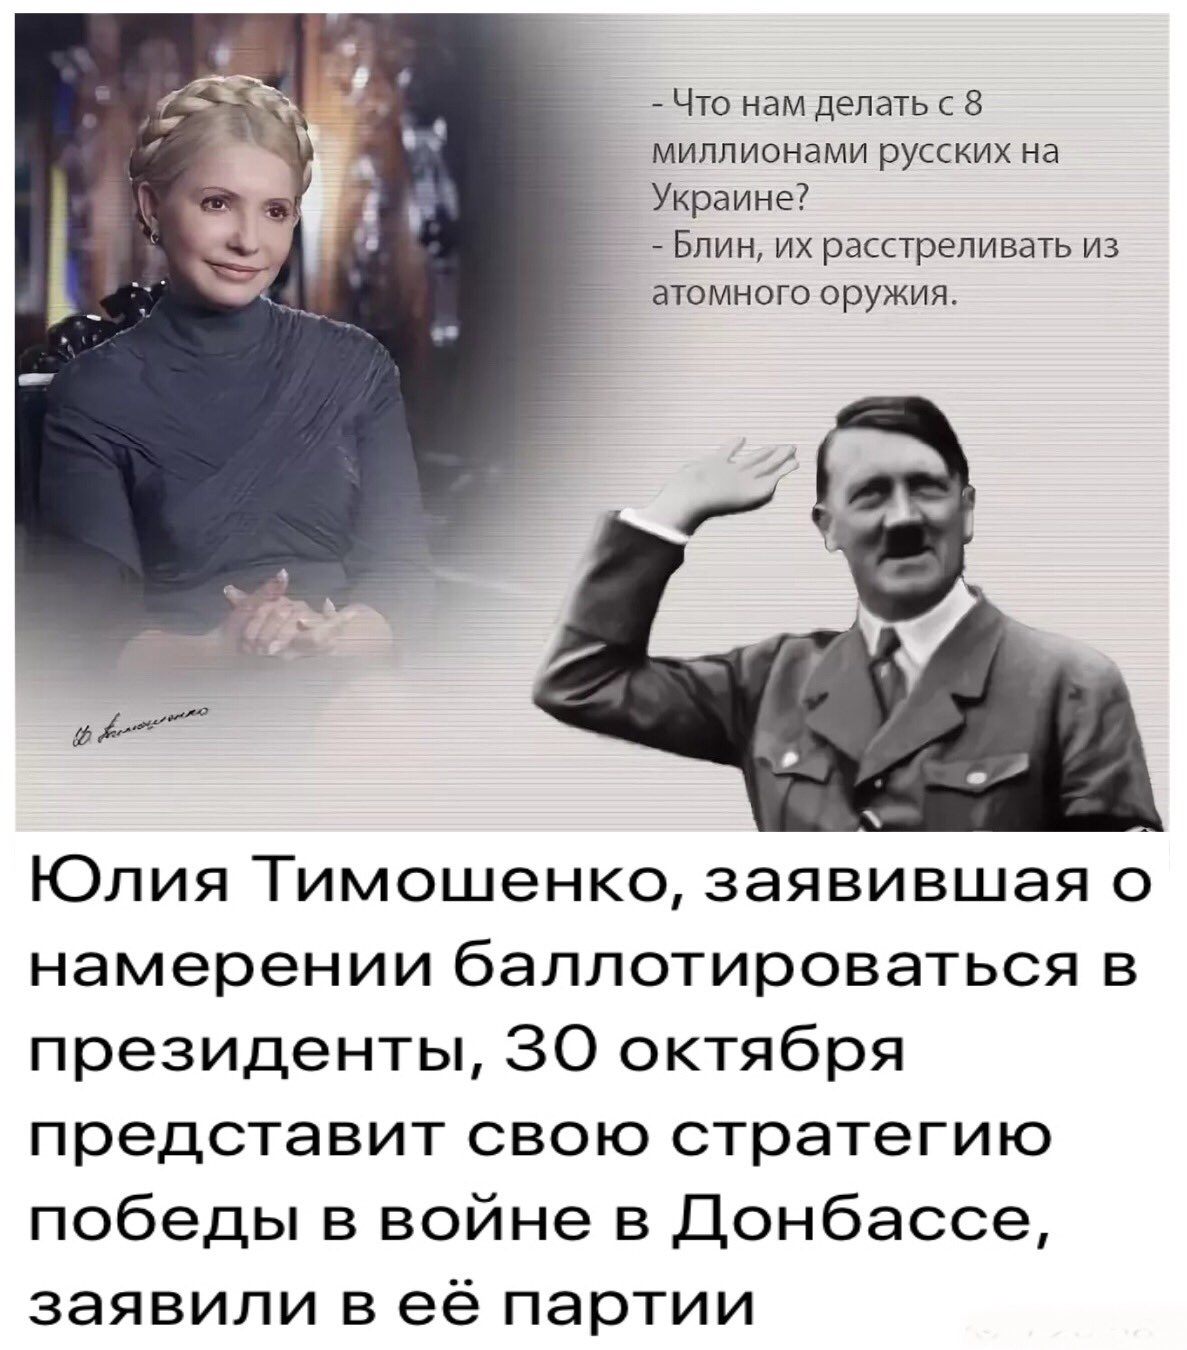 Тимошенко расстреливать русских из атомного оружия